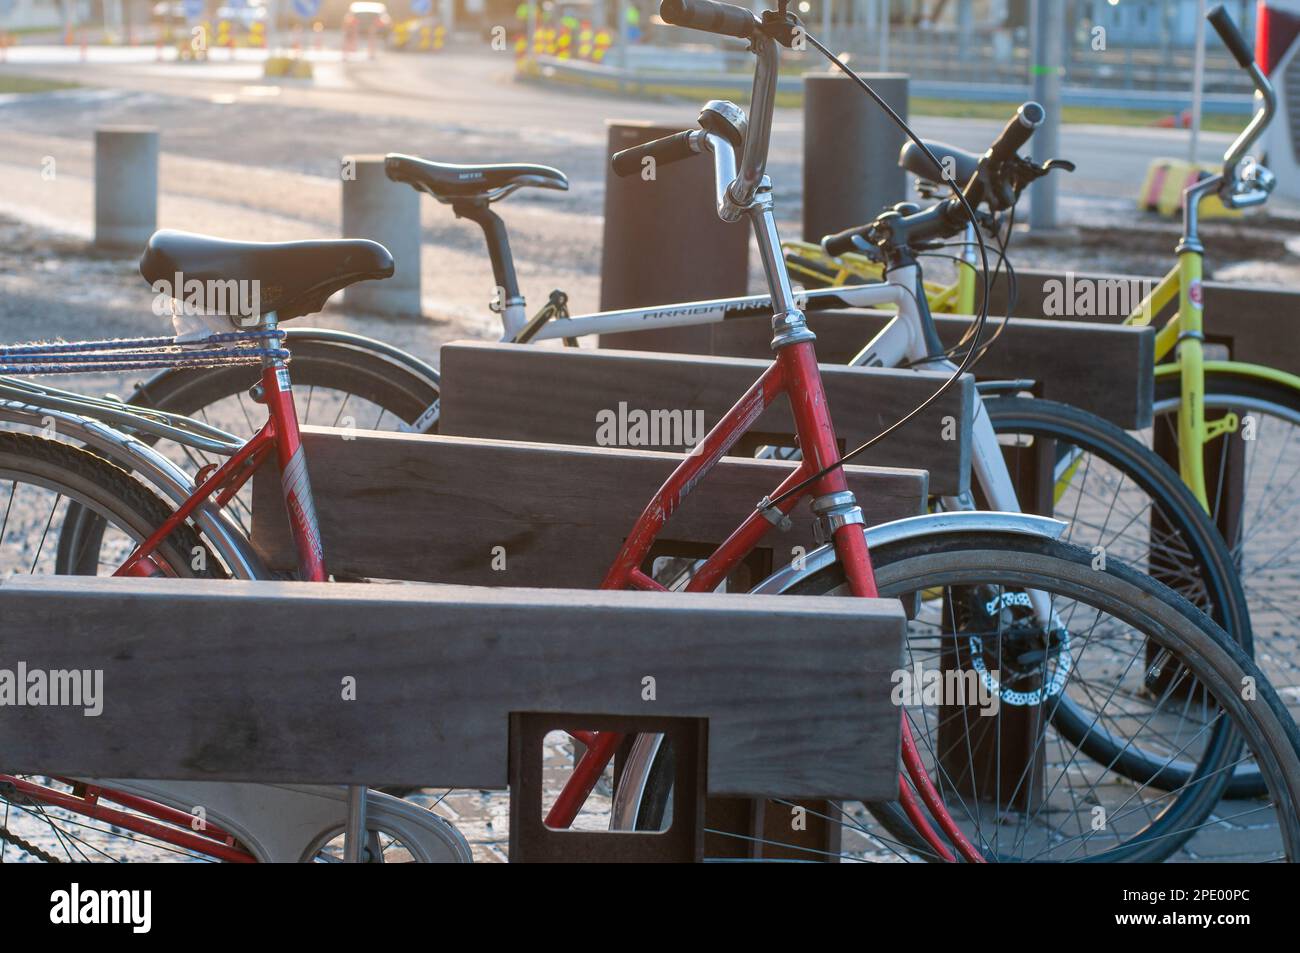 Le porte-vélo à poutres en bois est un support de vélo au design contemporain. Gros plan. Banque D'Images